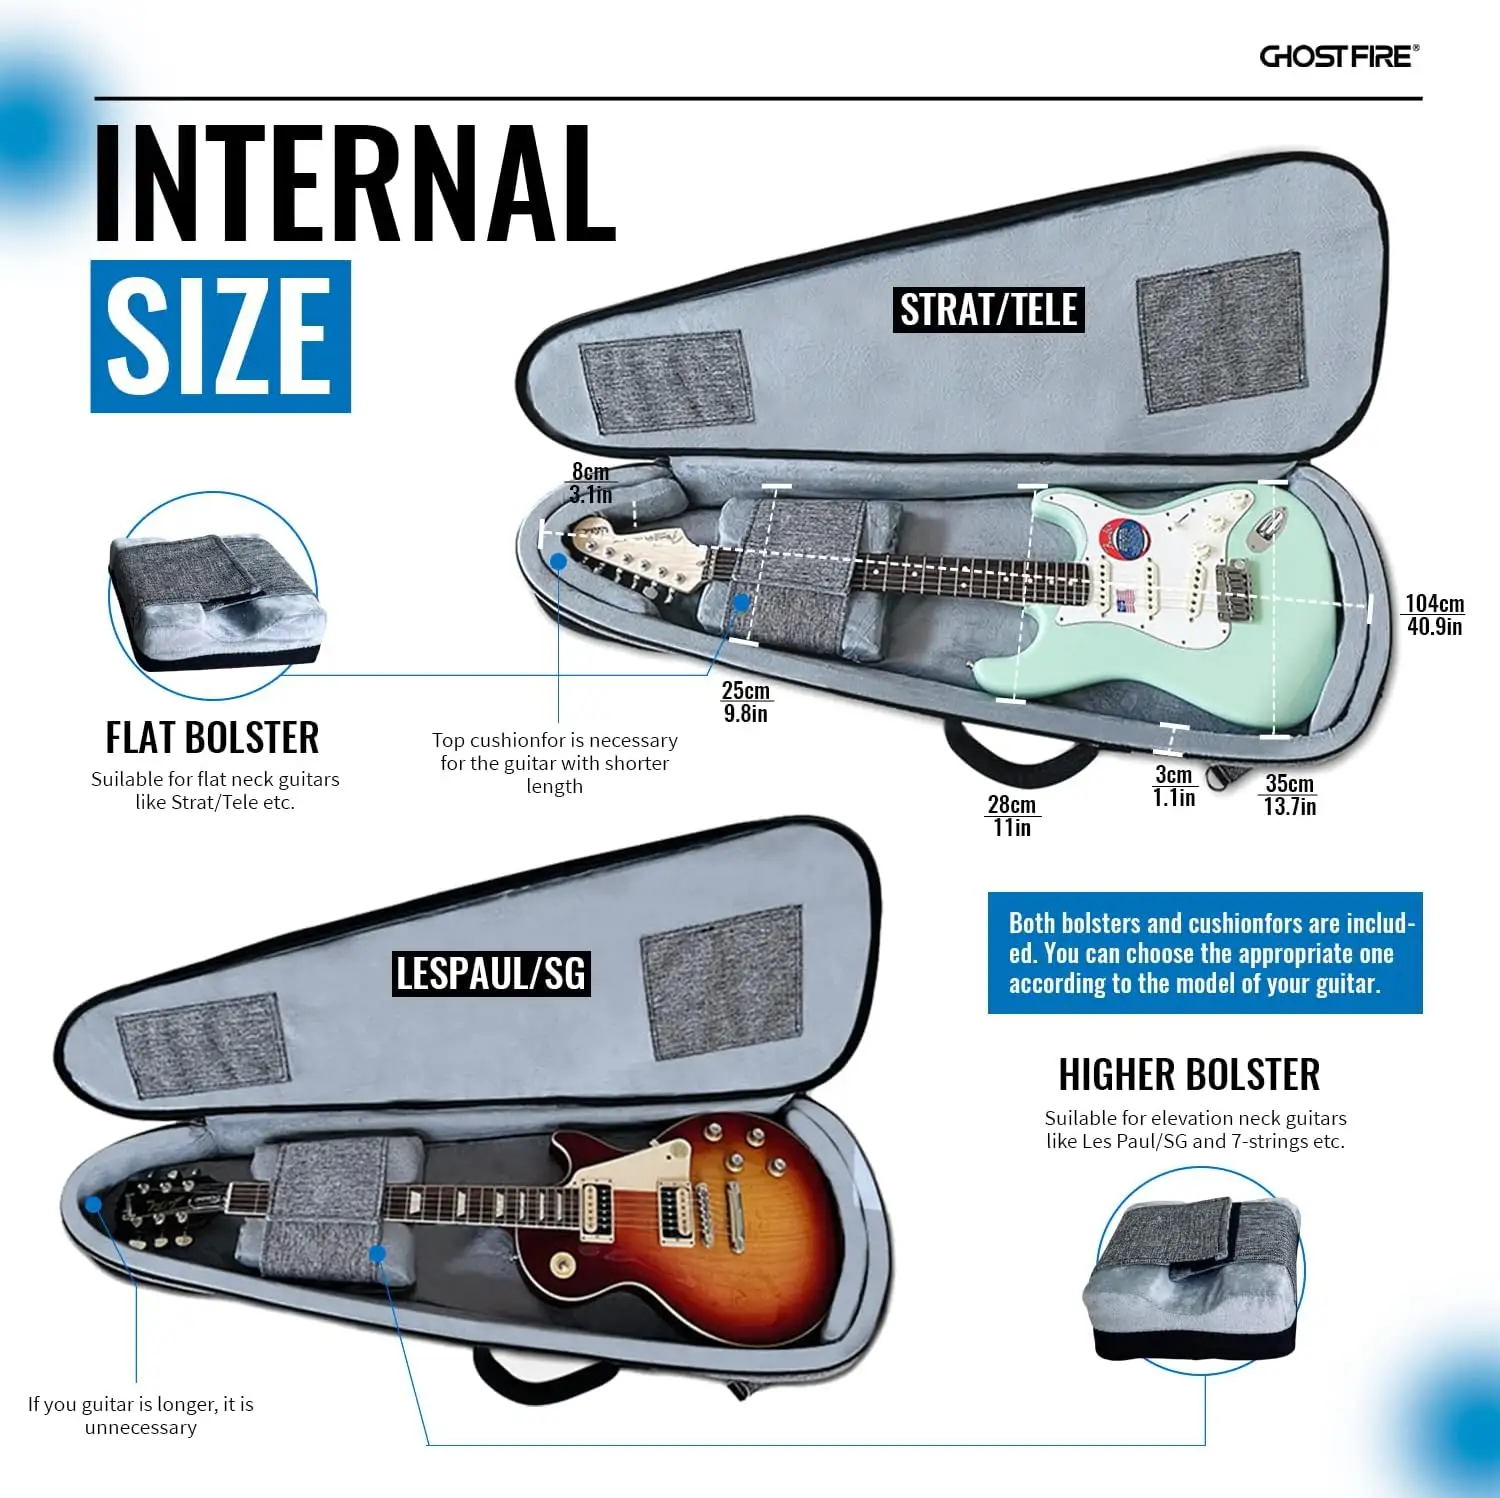 Ghost Fire OEM Instrumento Impermeável Super Grosso EVA acolchoado Guitarra Elétrica Gig Bag fit ST/TL LP/SG com Pacote de Expansão